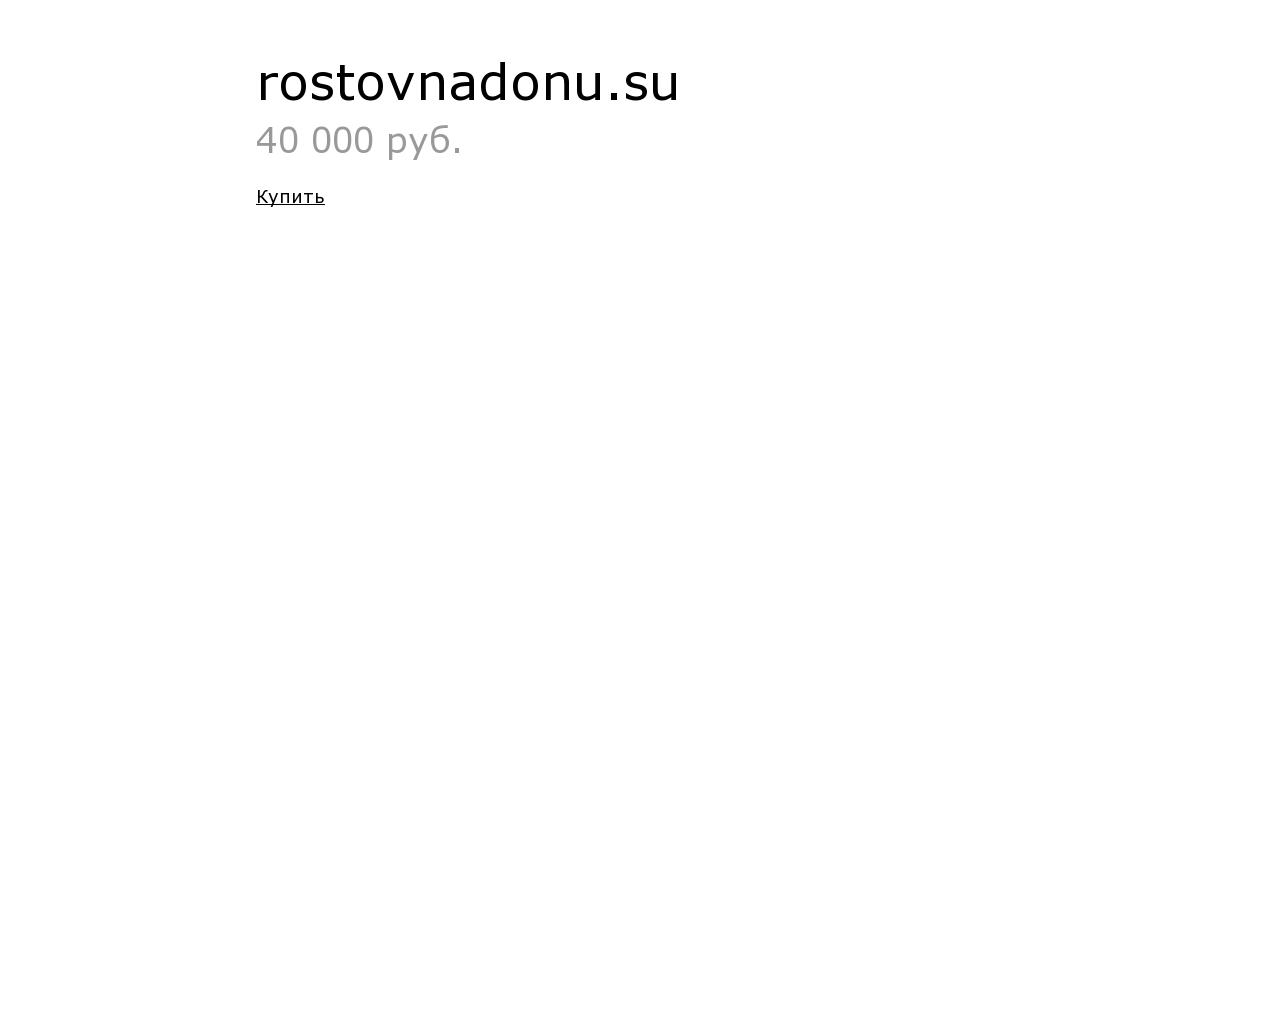 Изображение сайта rostovnadonu.su в разрешении 1280x1024